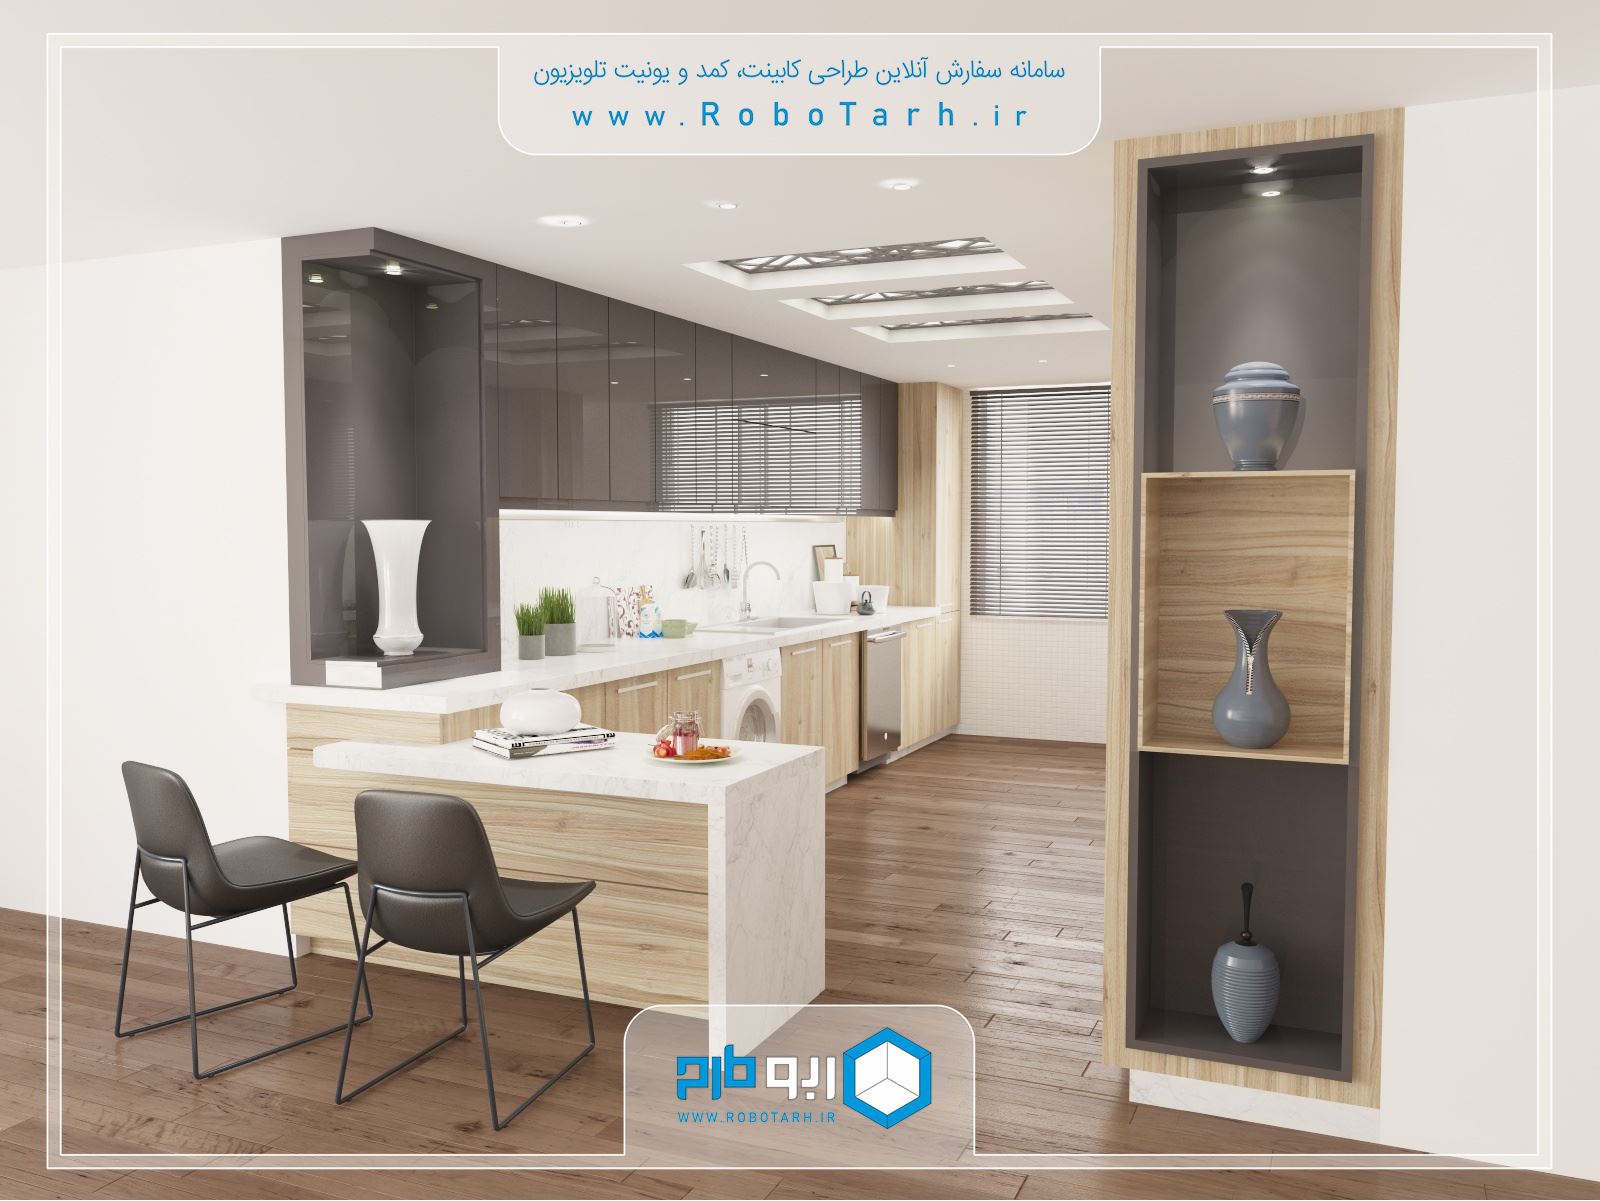 طراحی کابینت آشپزخانه فوق العاده و زیبا از ترکیب رنگ خاکستری تیره و چوب روشن - ربوطرح